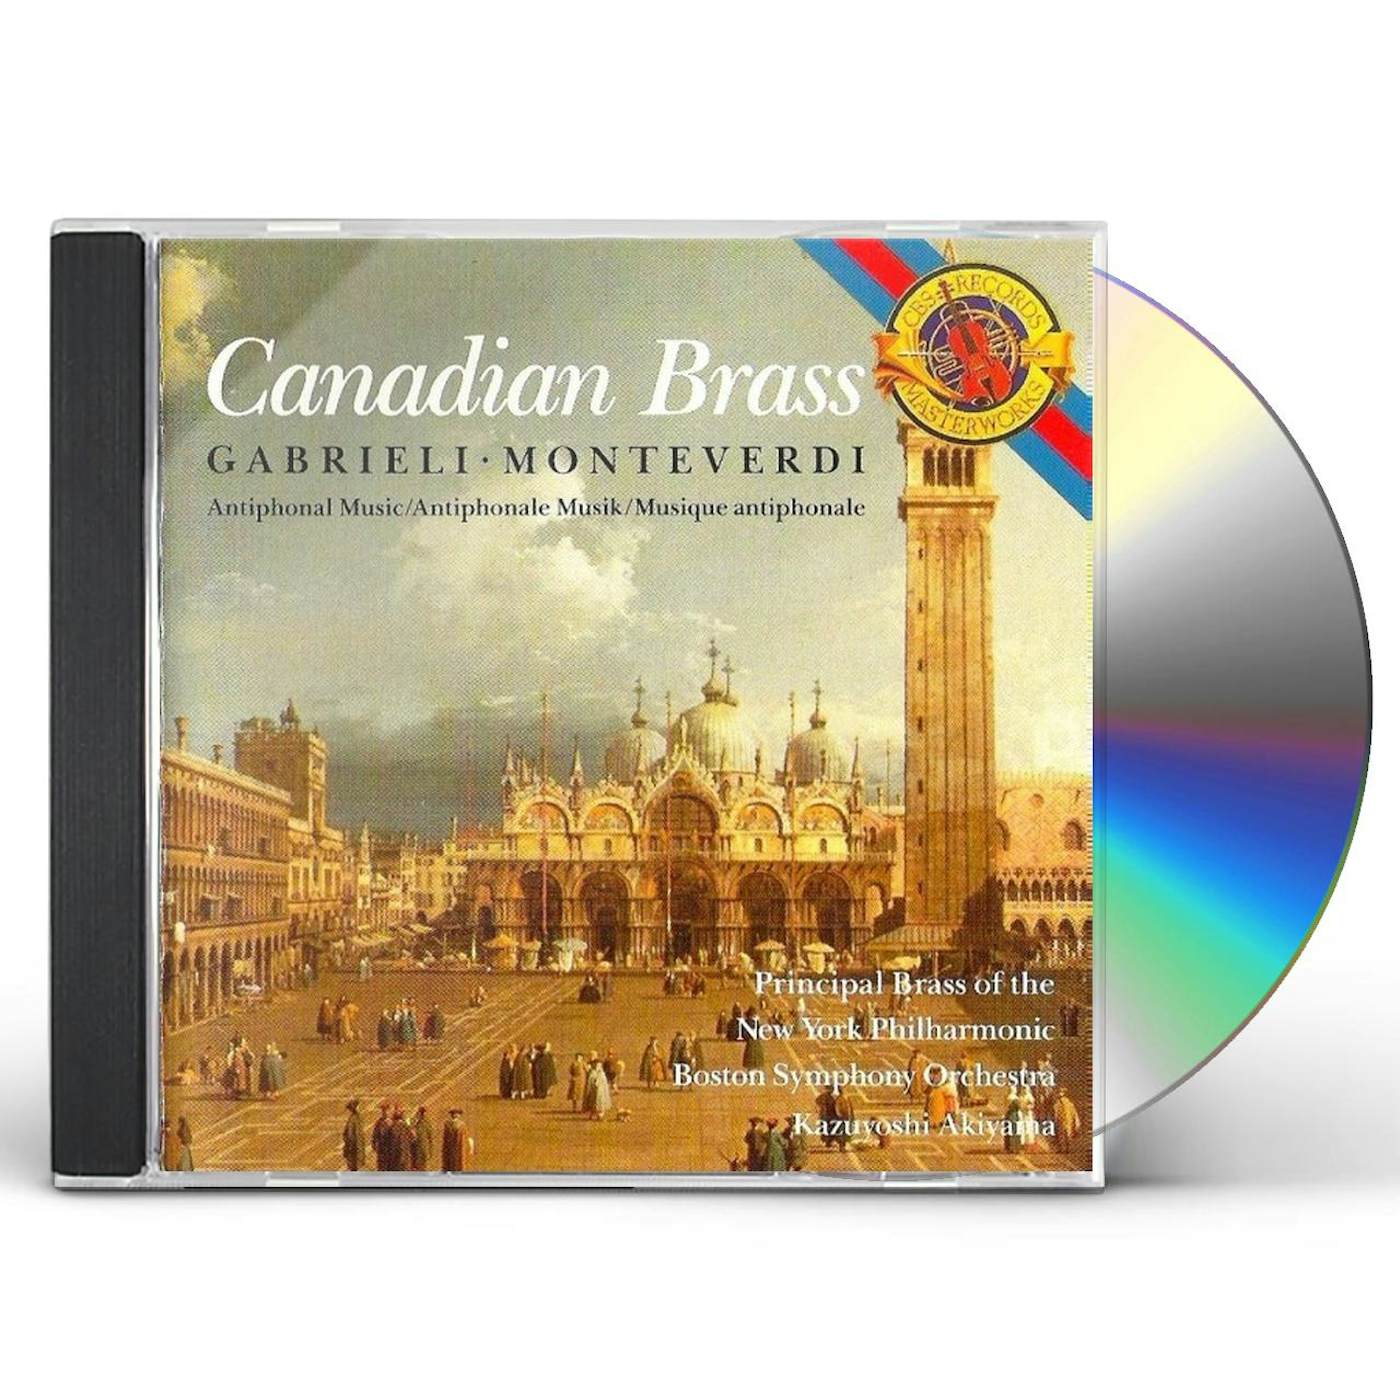 Canadian Brass GABRIELI ALBUM / MONTEVERDI ALBUM CD